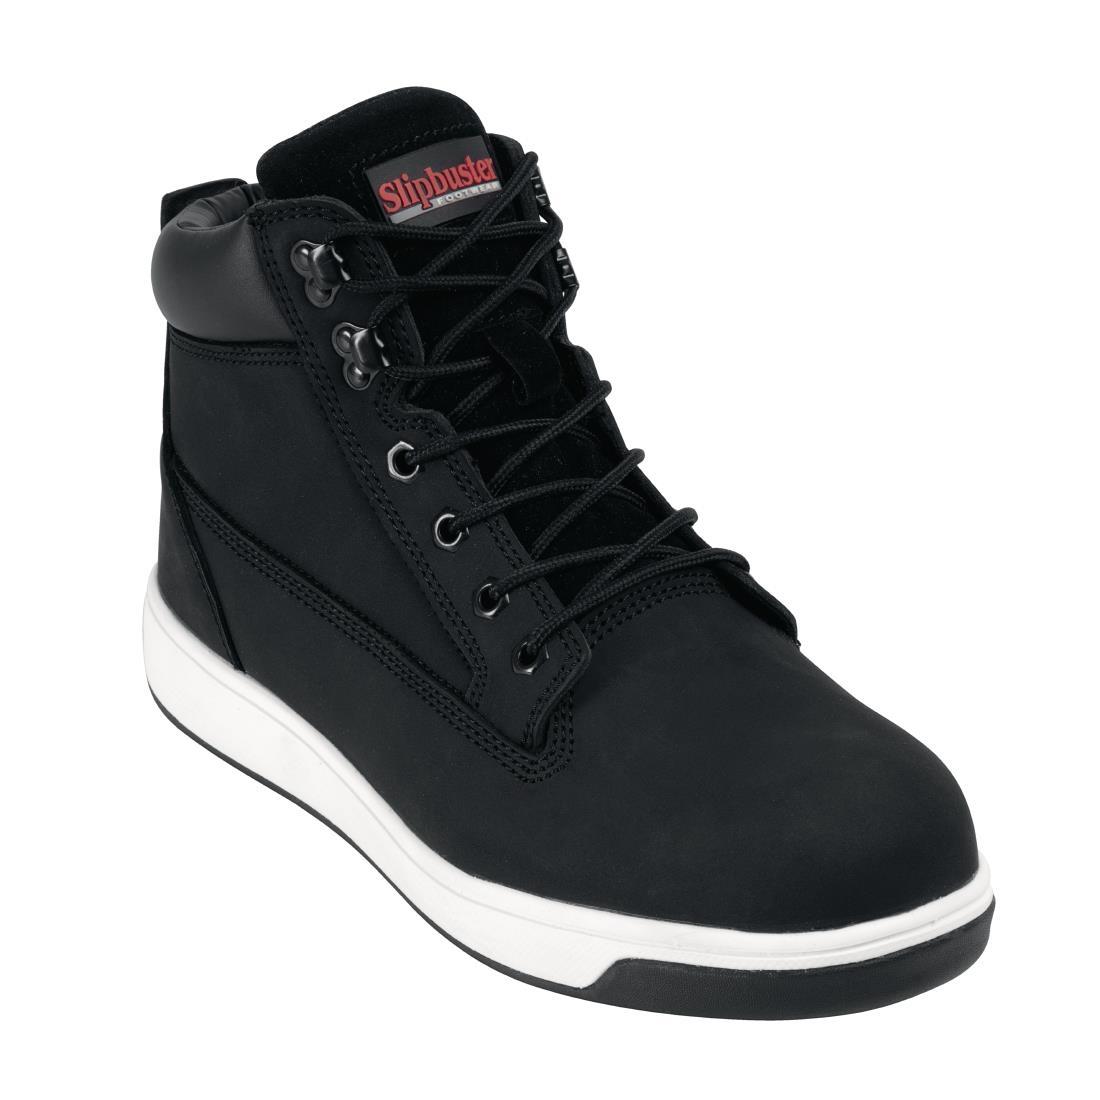 Slipbuster Sneaker Boots Black 46 - BB422-46  - 1